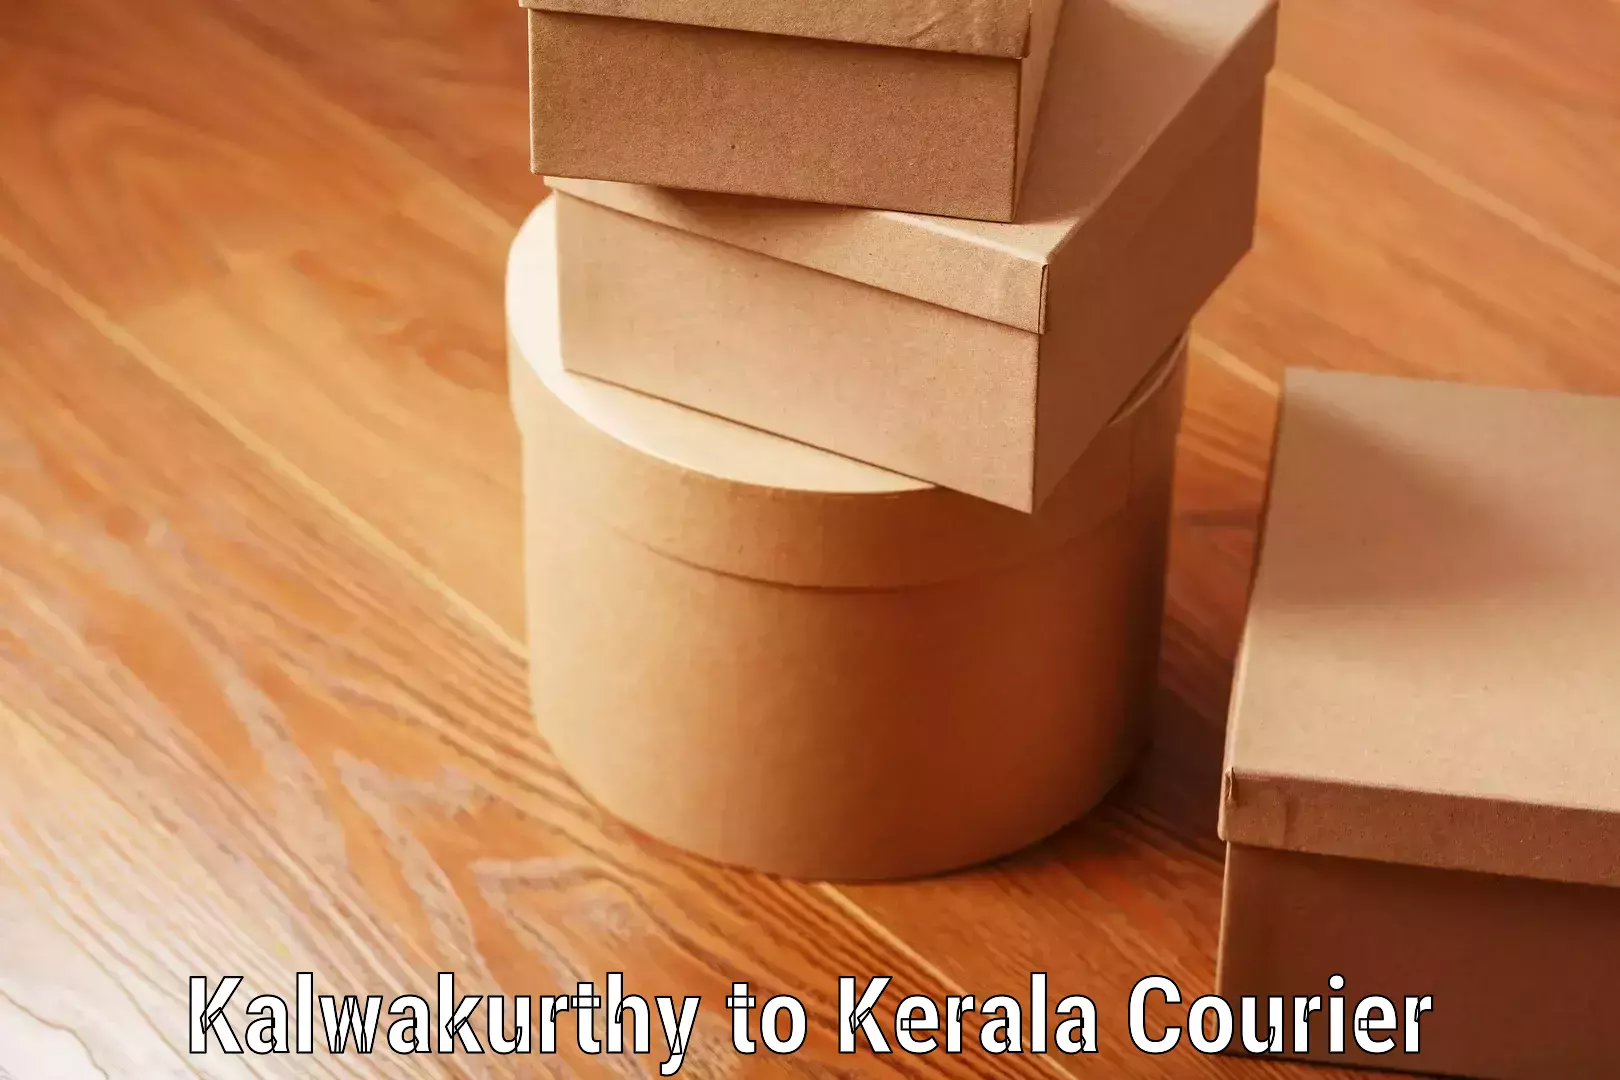 Urgent luggage shipment Kalwakurthy to Kerala